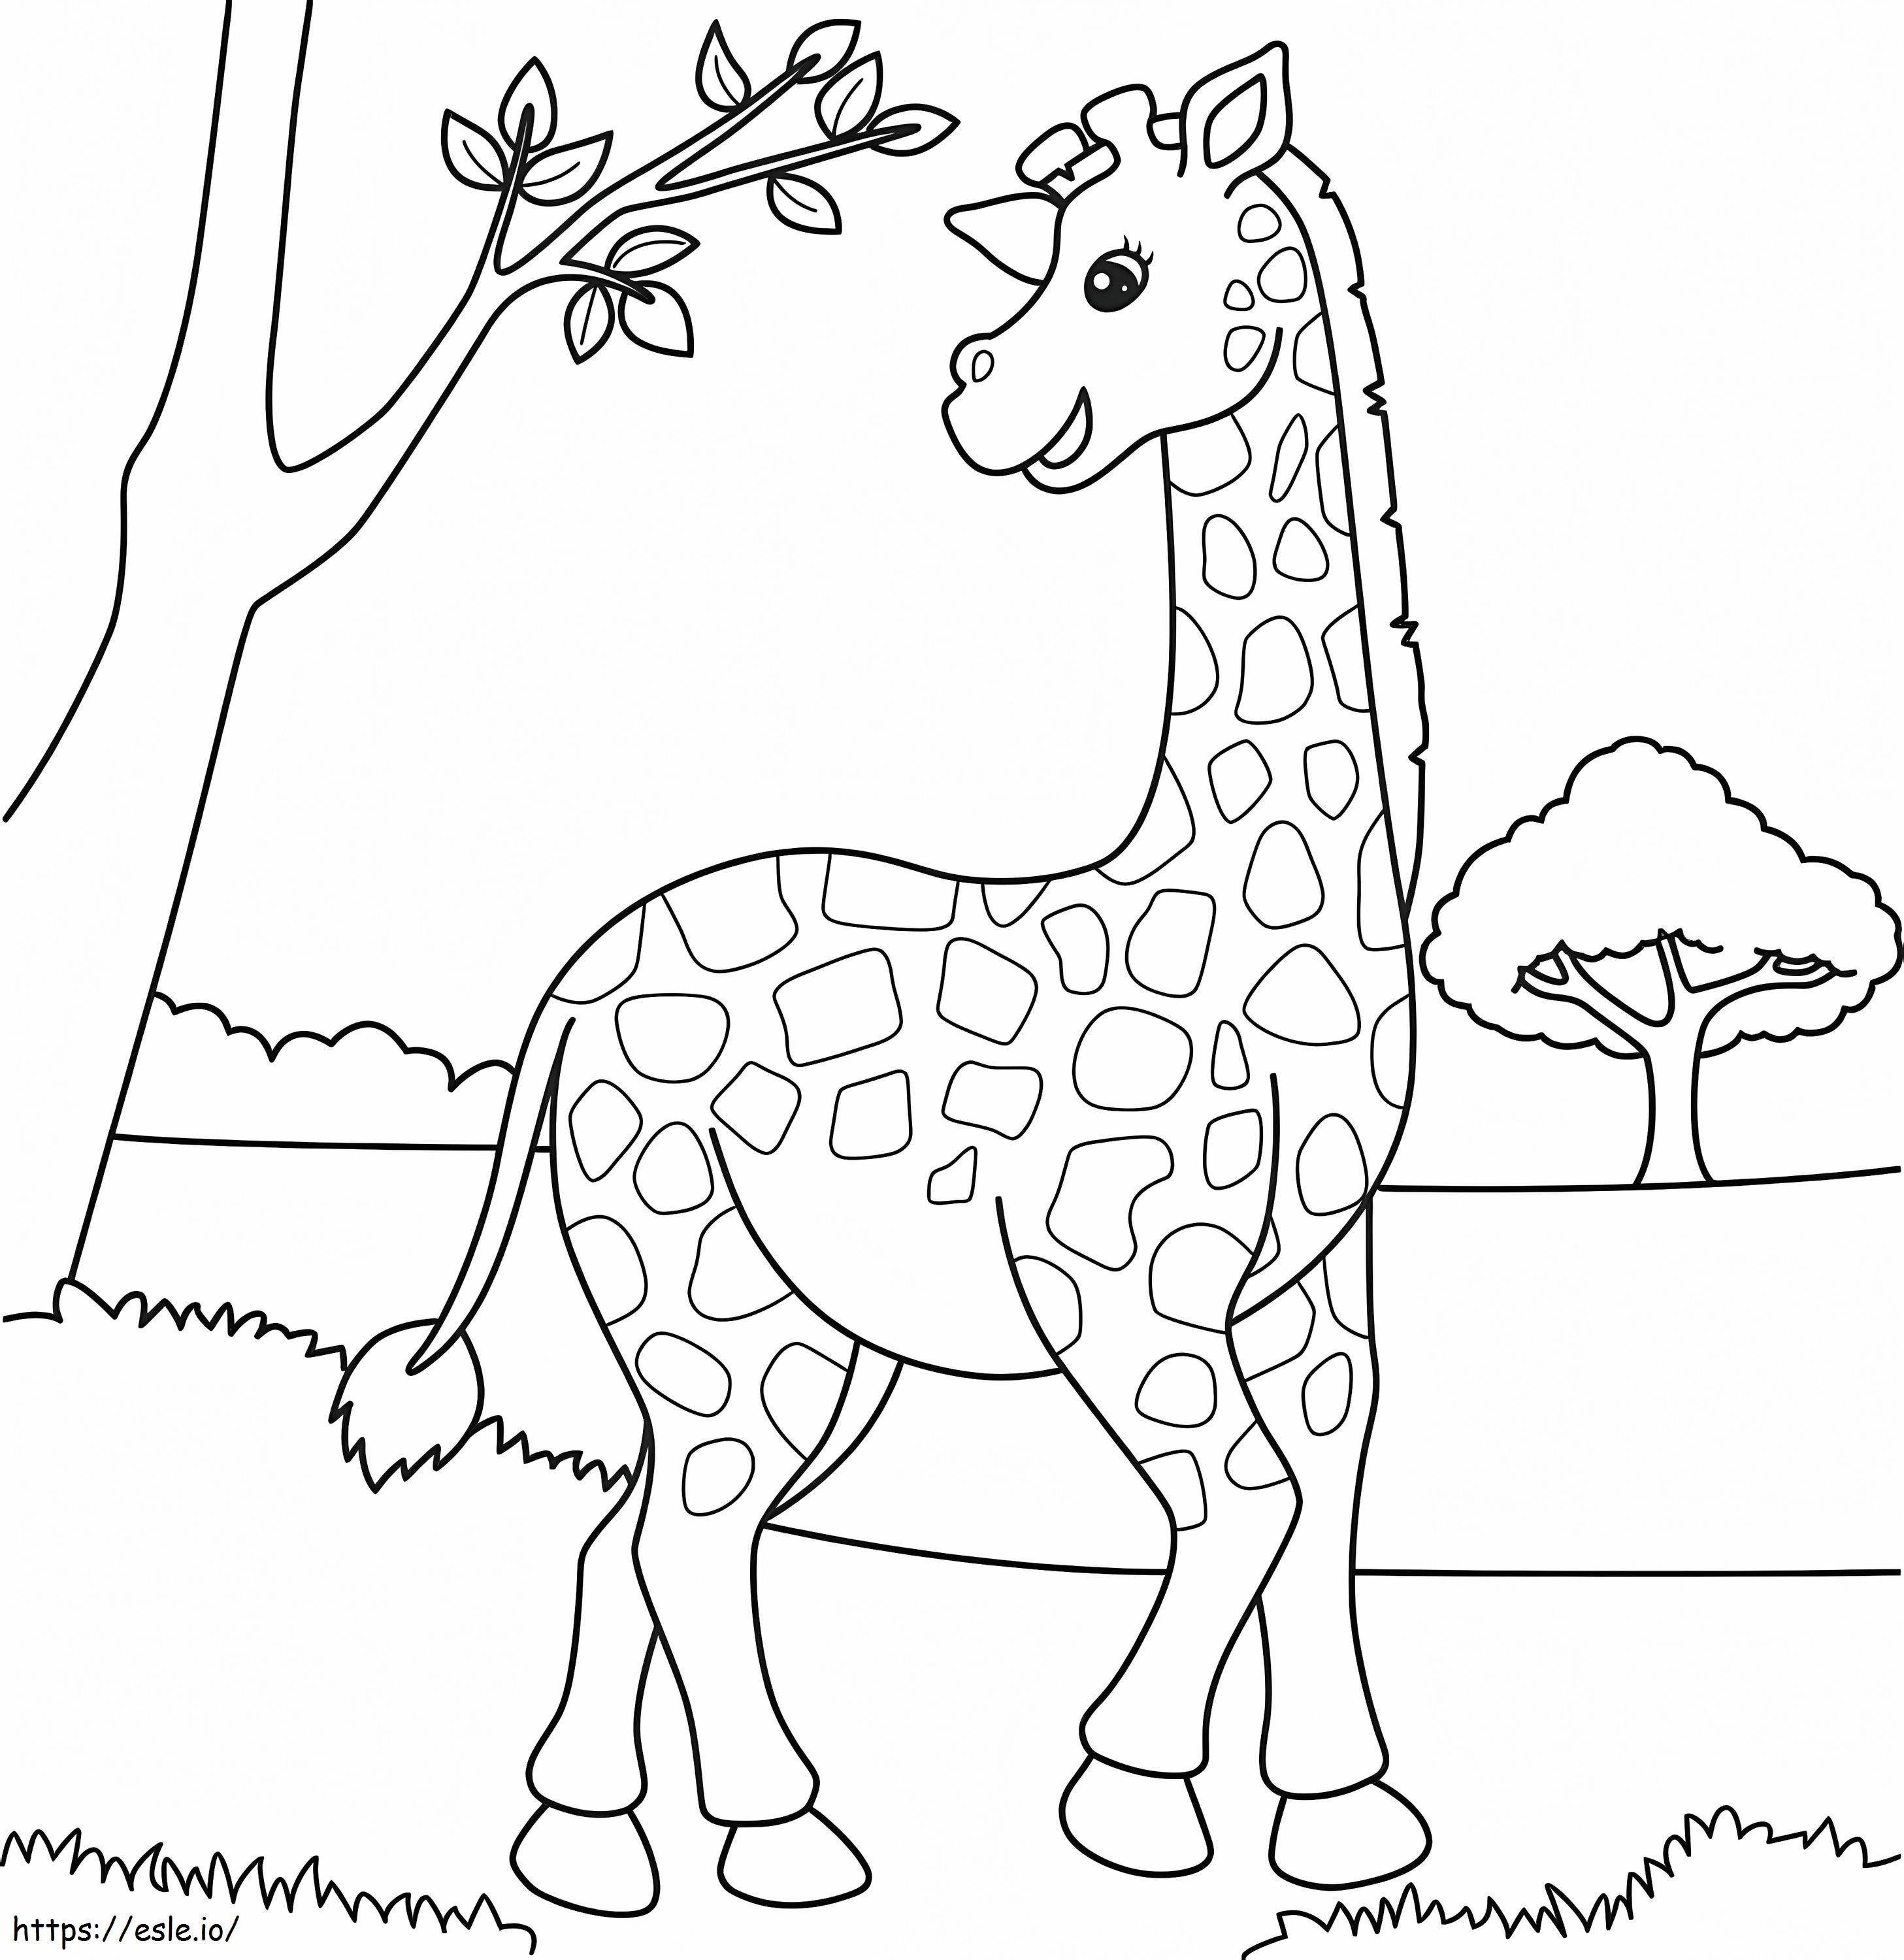 Coloriage Images gratuites de girafe à imprimer dessin